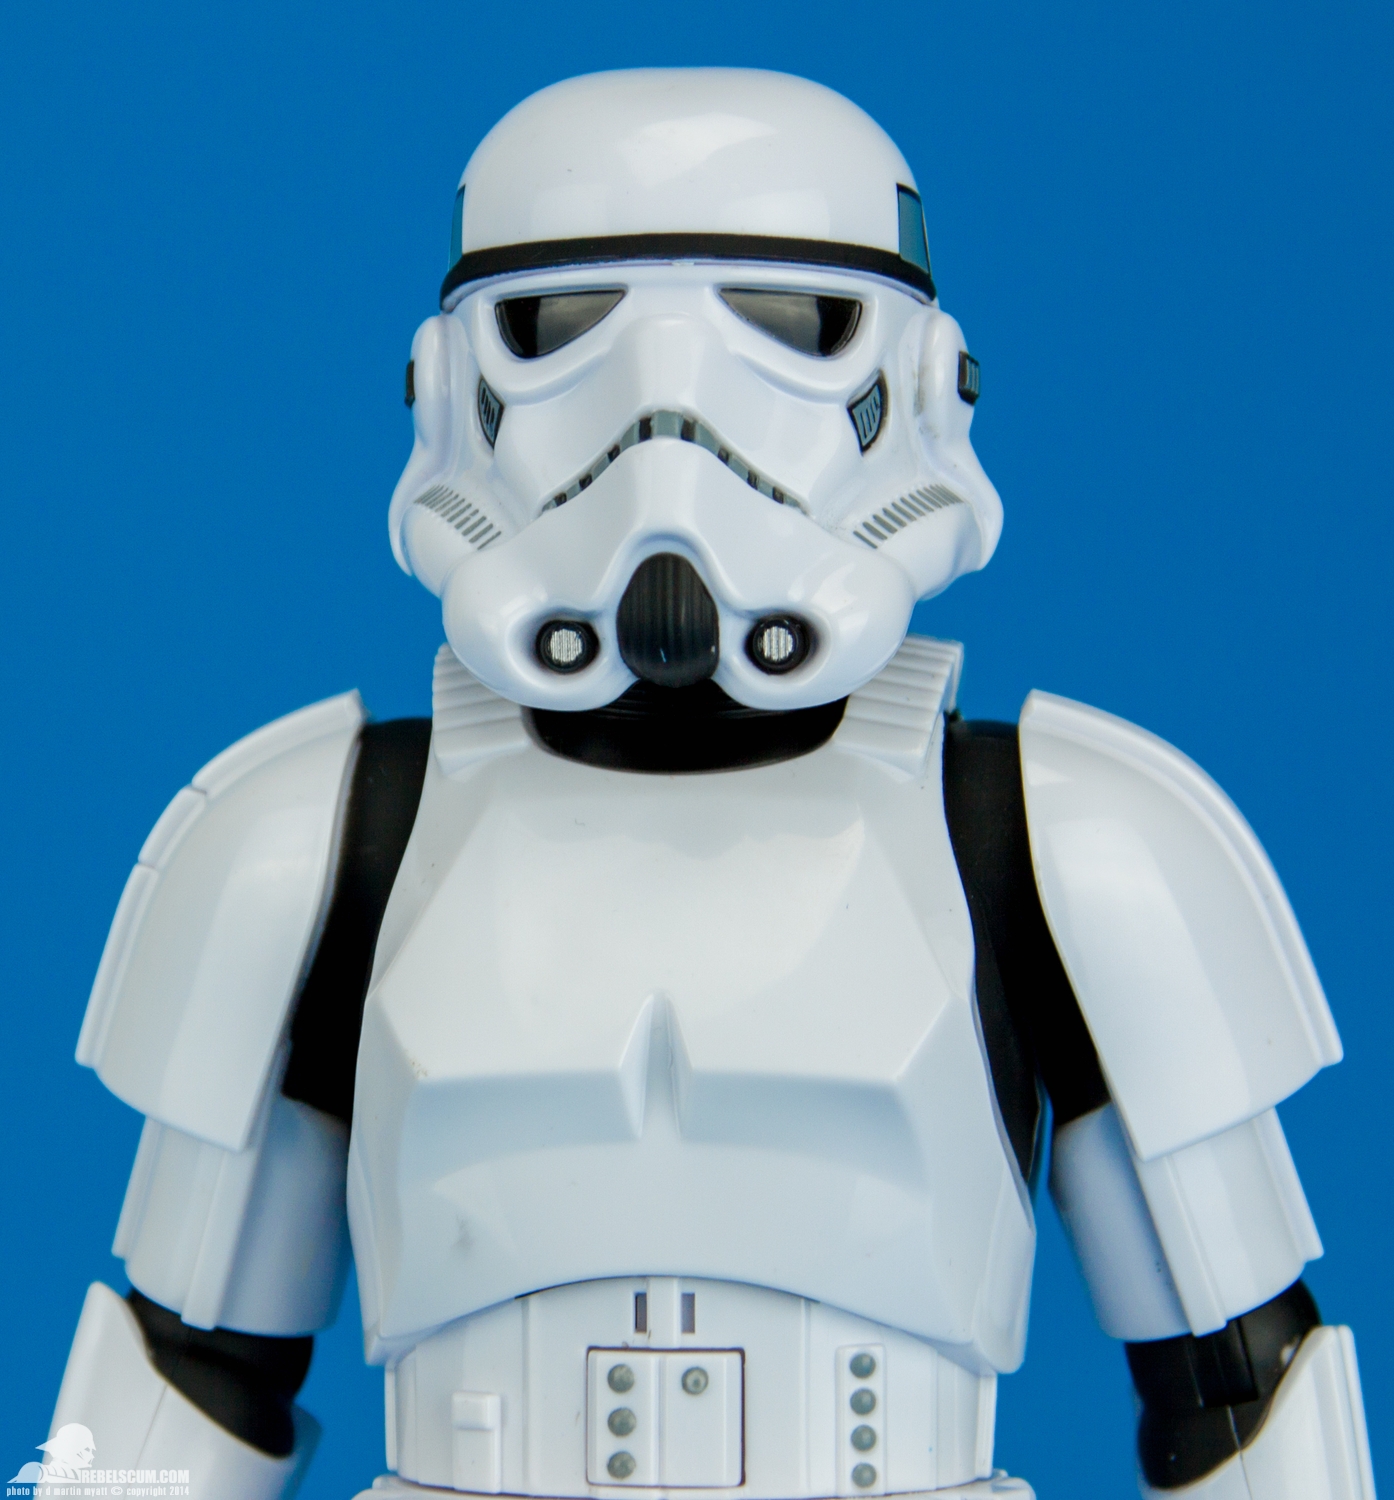 Disney-Store-Exclusive-Talking-Stormtrooper-005.jpg